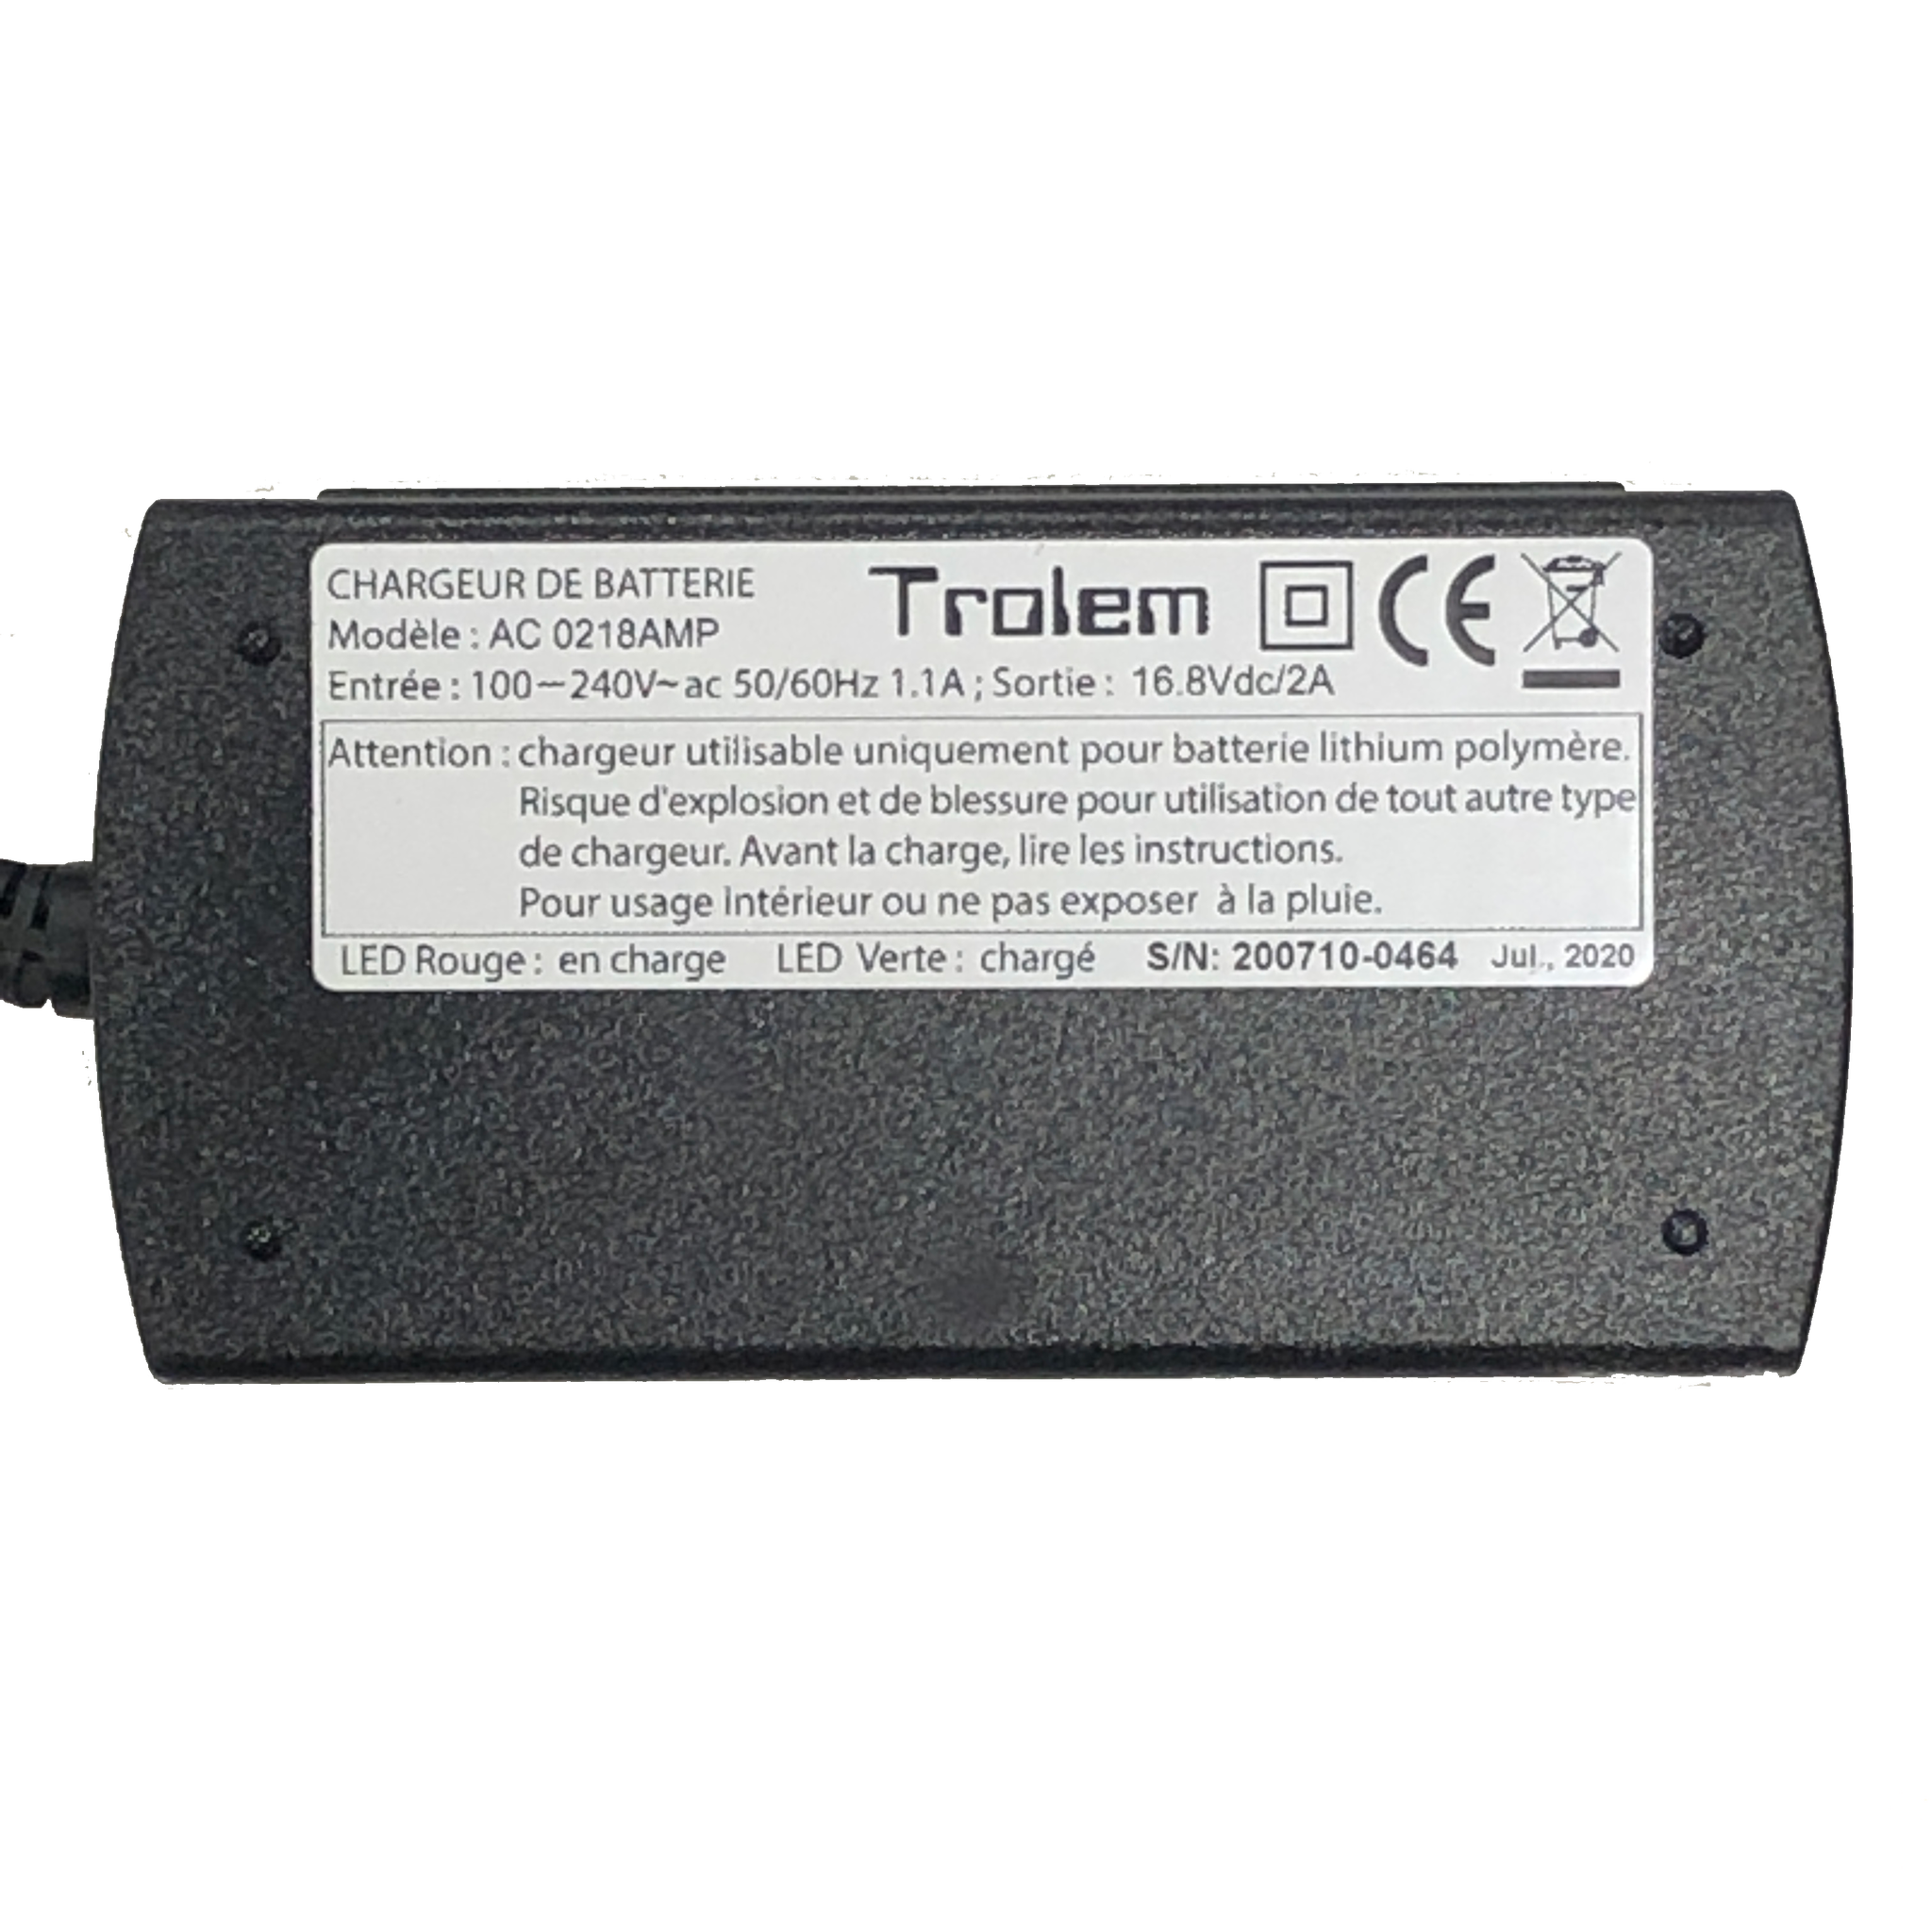 Trolem batteriladdare till litiumbatteri